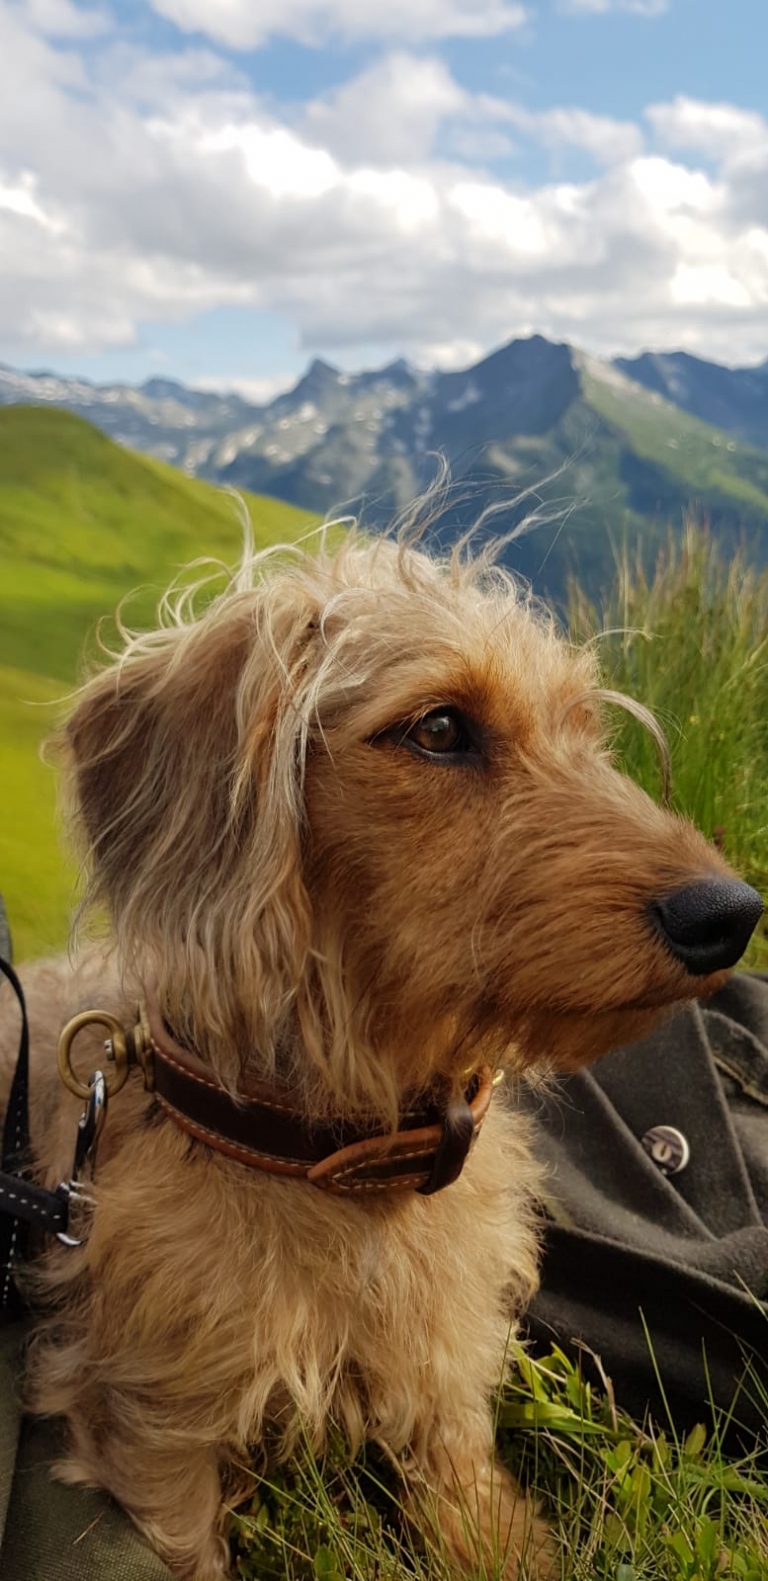 Alpenhaus Katschberg - Urlaub mit Hund